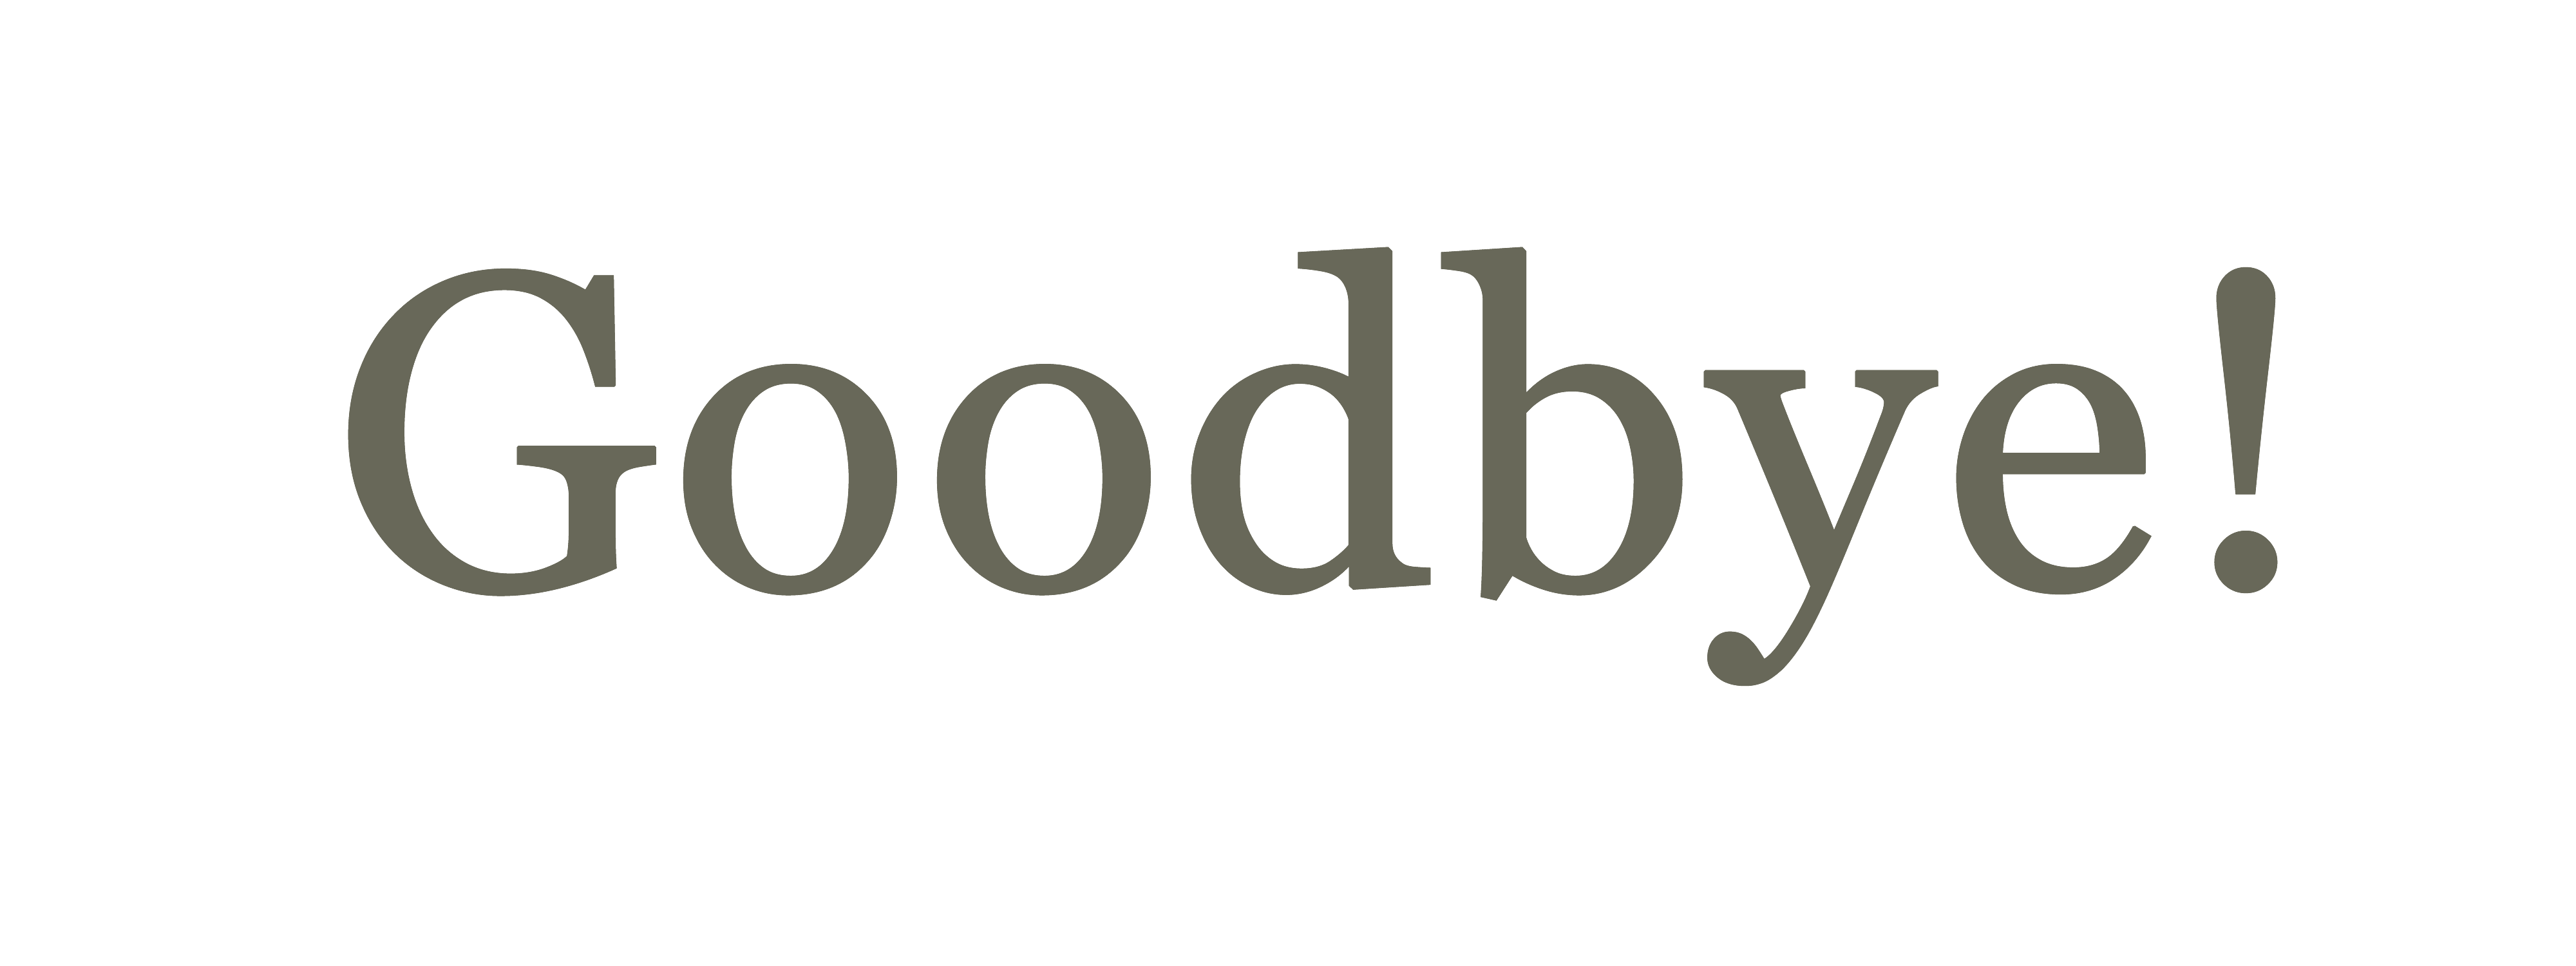 lettering logo: Goodbye, Hand